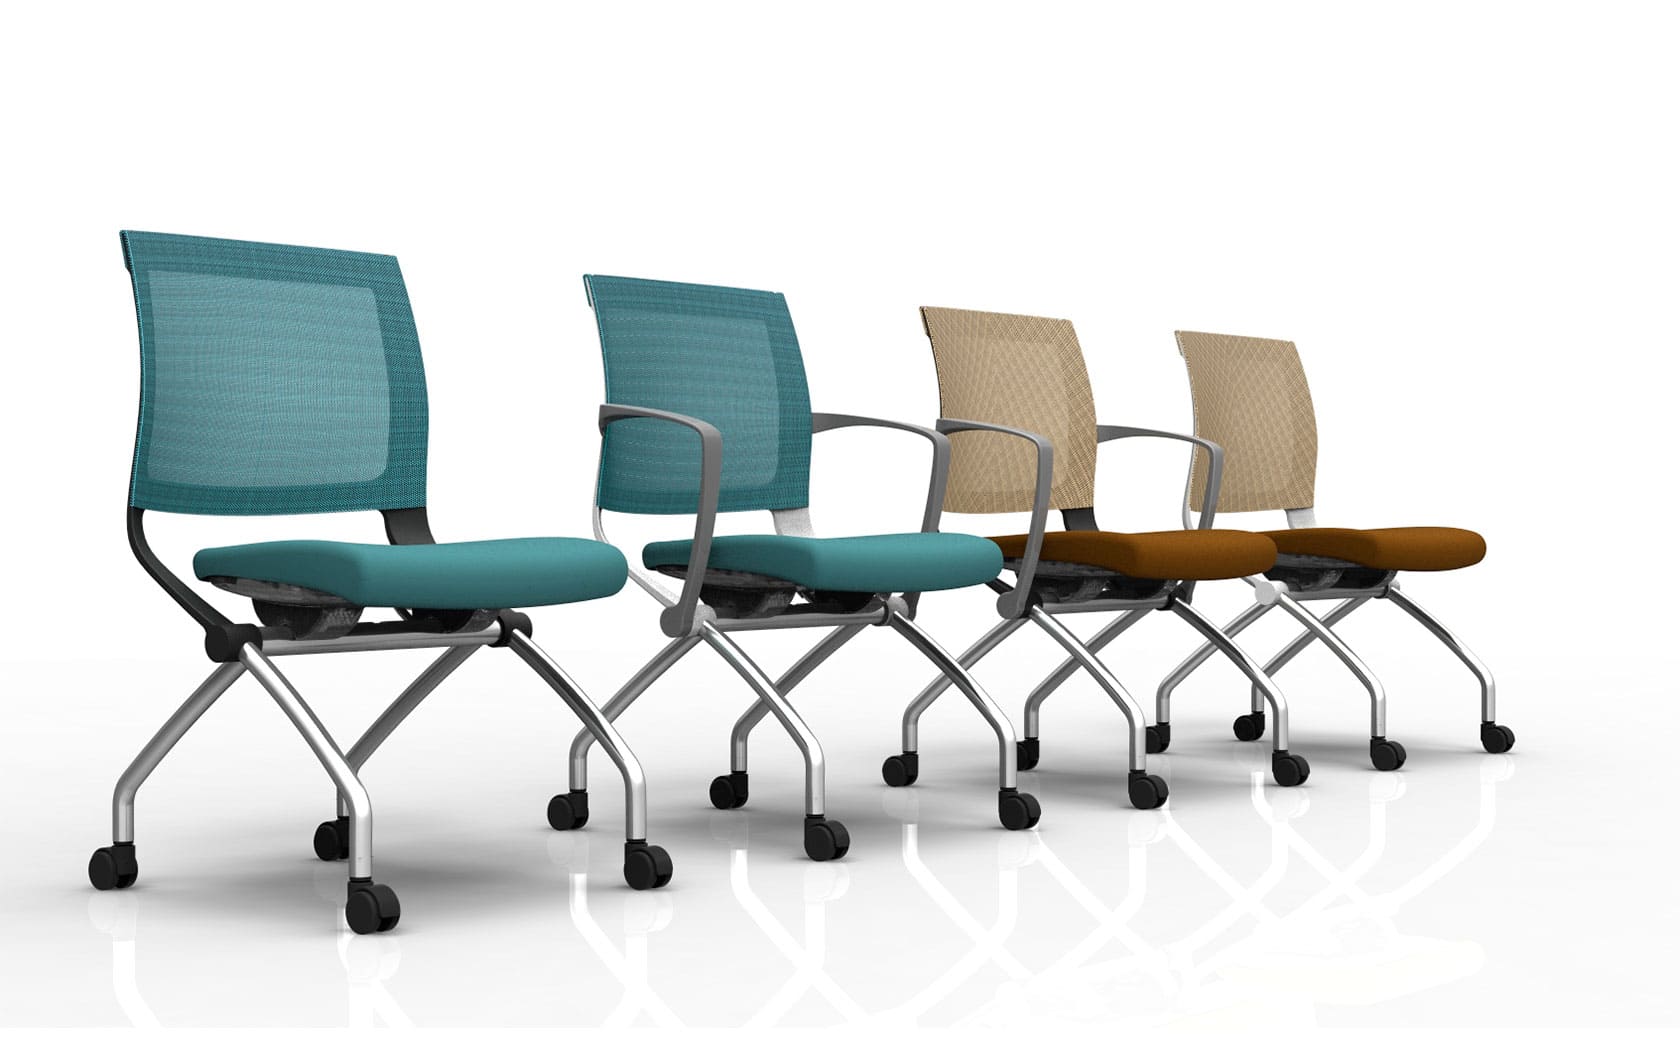 Somos una fábrica de sillas de oficina ergonómicas y de diseño.